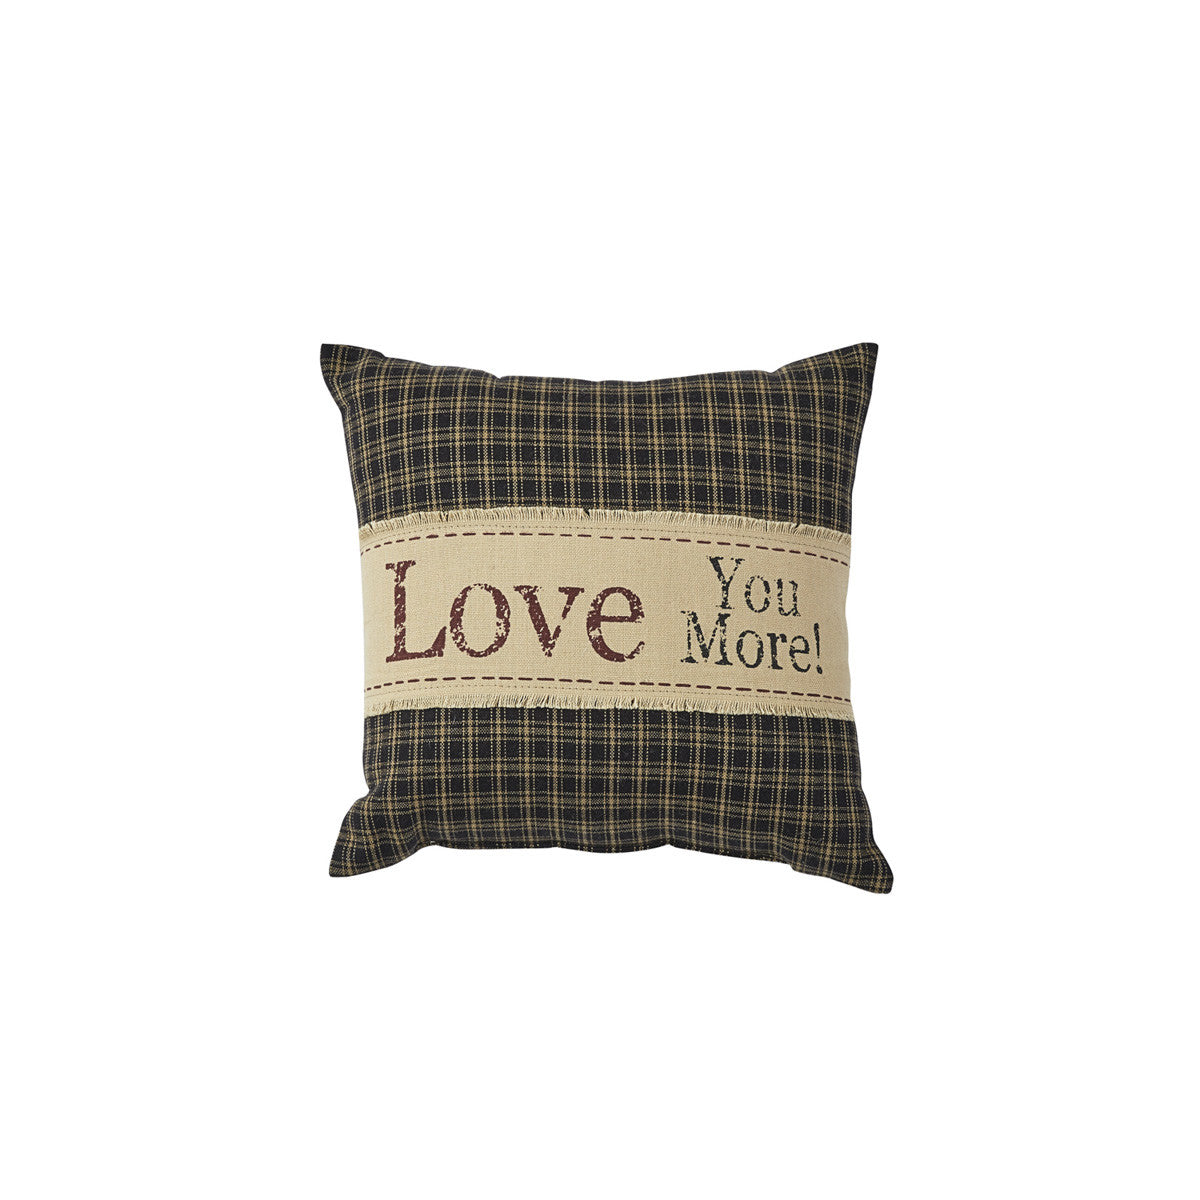 Love You More Pillow - 10x10 Burlap Trim Park Designs